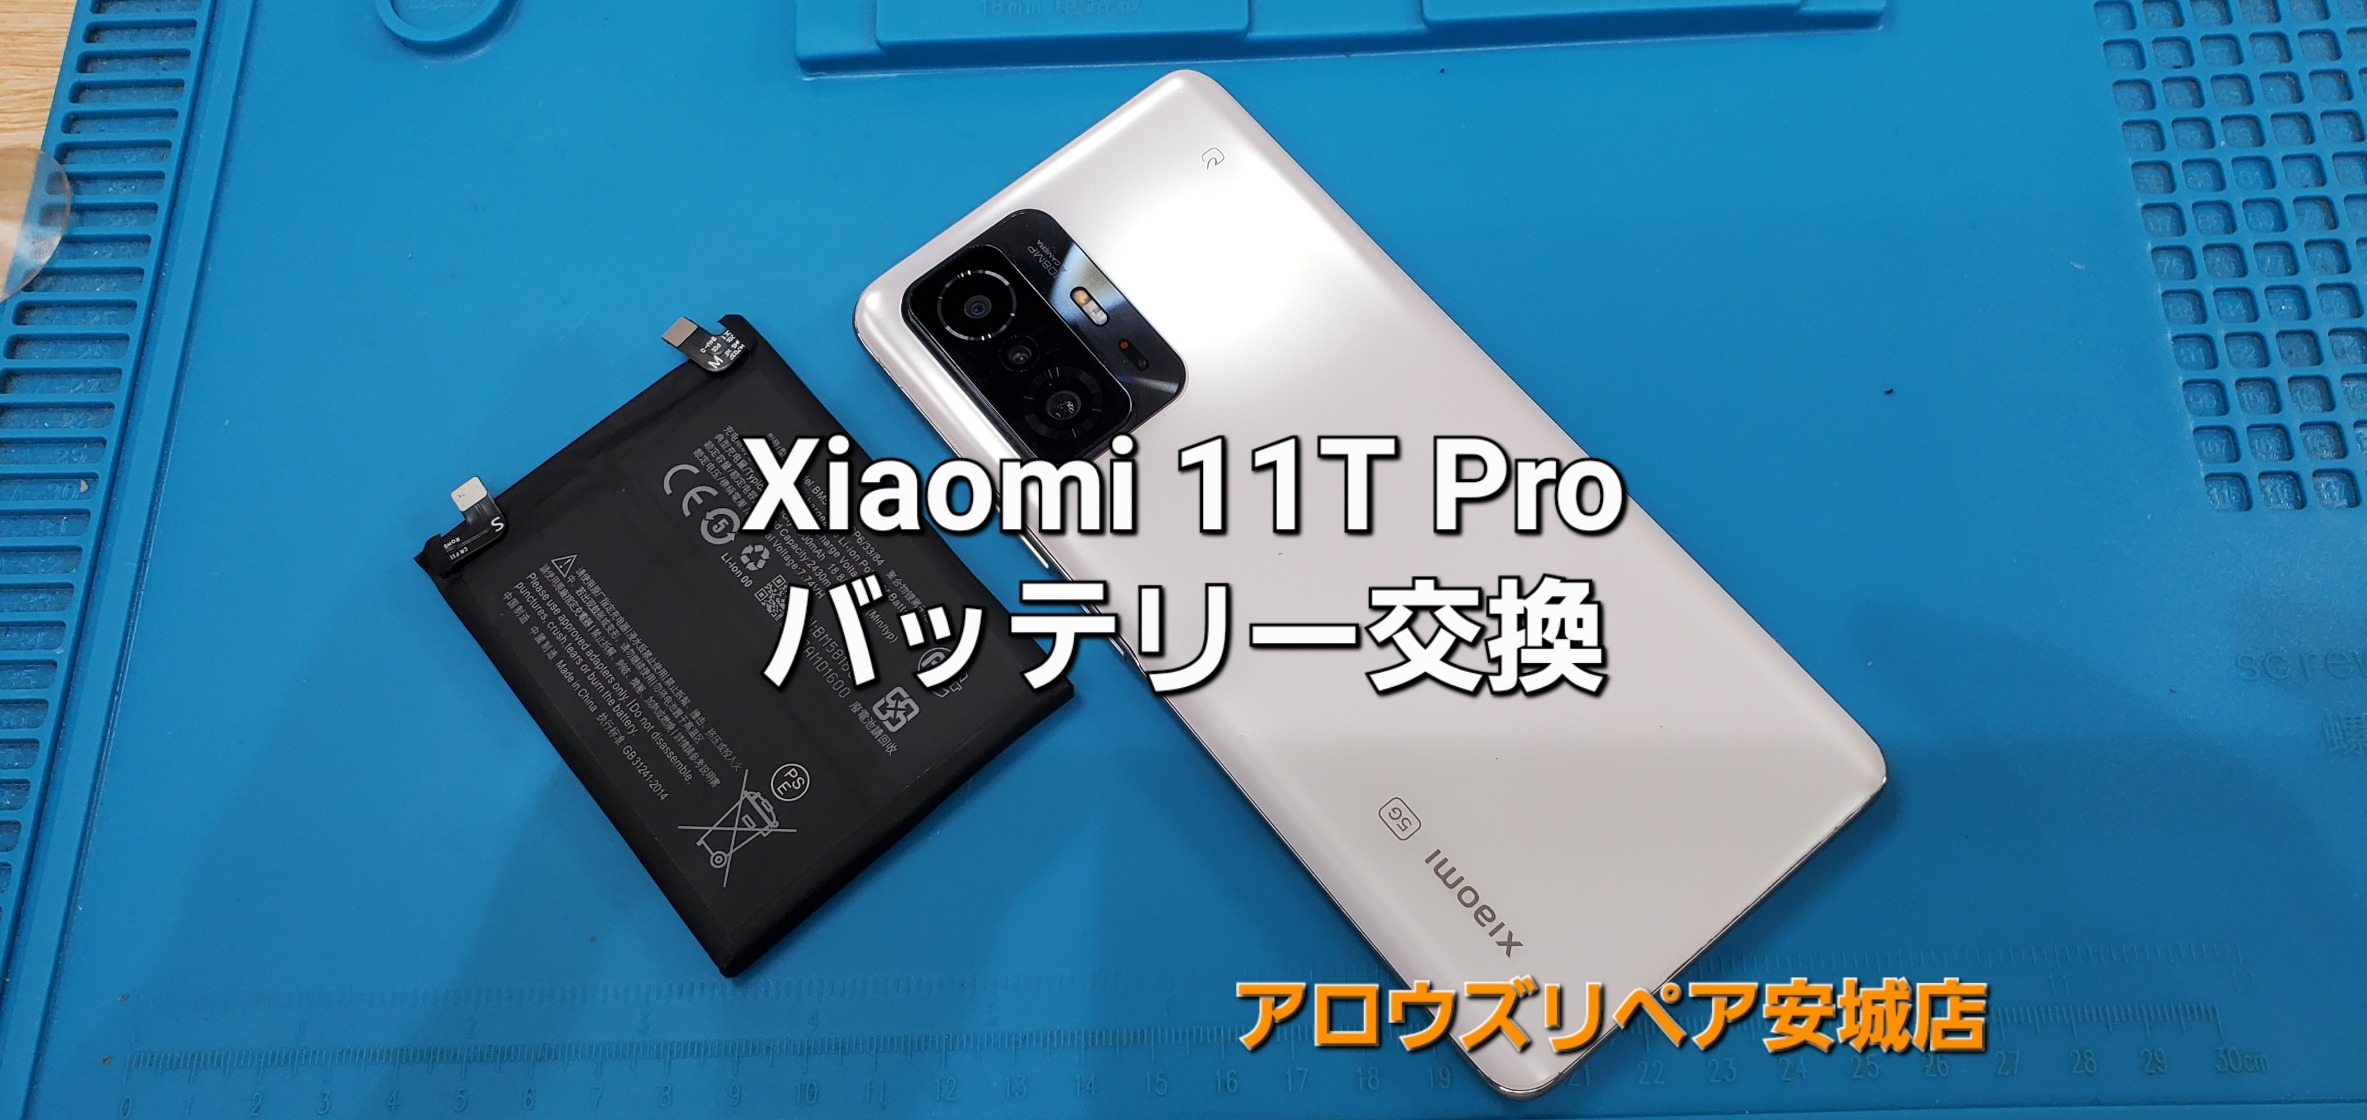 名古屋市よりご来店、Xiaomi 11T Pro バッテリー交換修理のご紹介。|安城駅徒歩3分|iPhone・Switch・iPad修理ならアロウズリペア安城がおすすめ！JR安城駅から徒歩3分、データそのまま即日修理、Switch修理もお任せ下さい。お客様のお悩み解決致します。